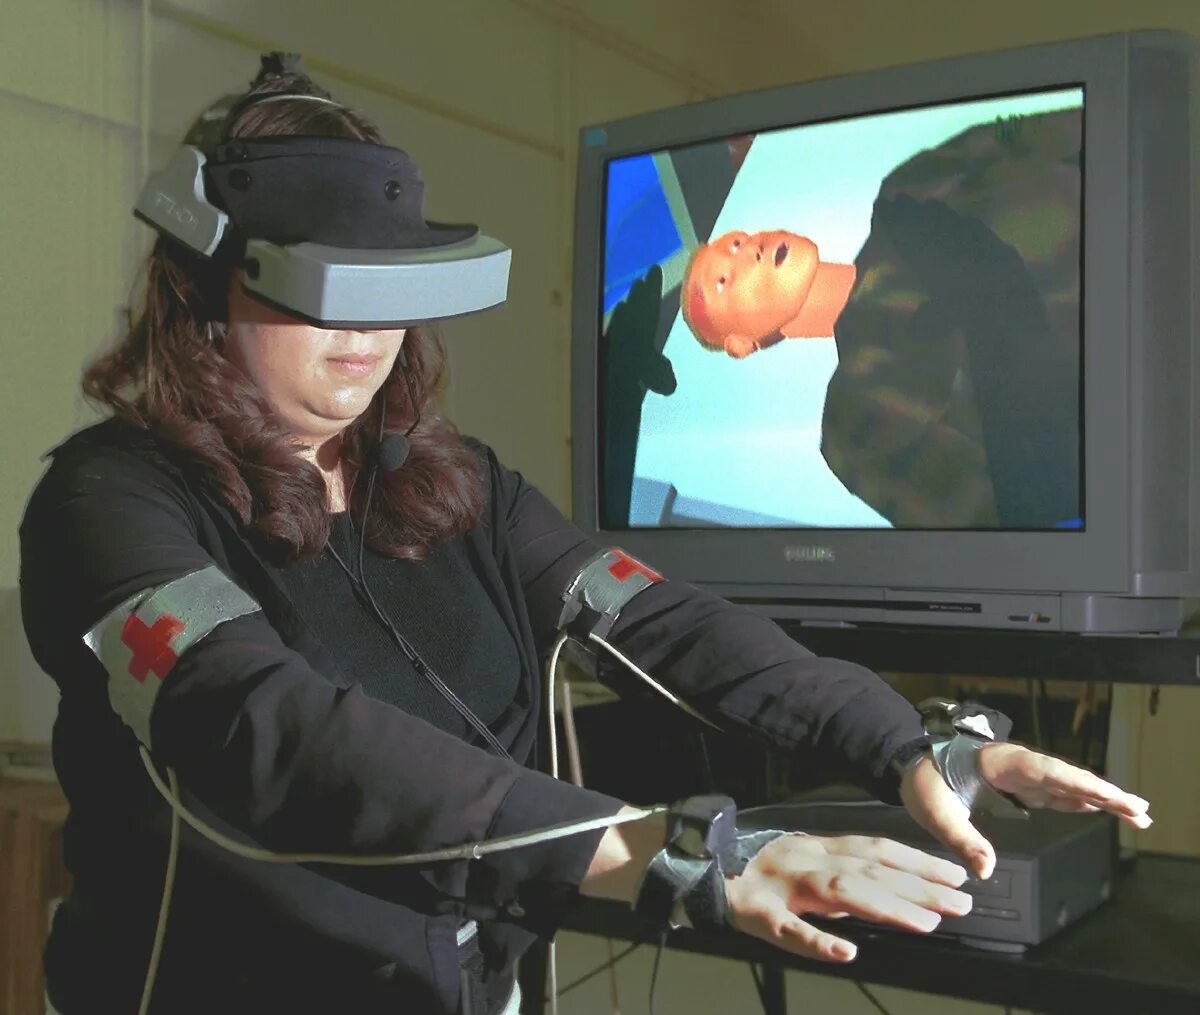 Vr полное погружение. Виртуальная реальность с полным погружением. ОБЖ В виртуальной реальности. Сферы применения виртуальной реальности. Технологии ВР С полным погружением.